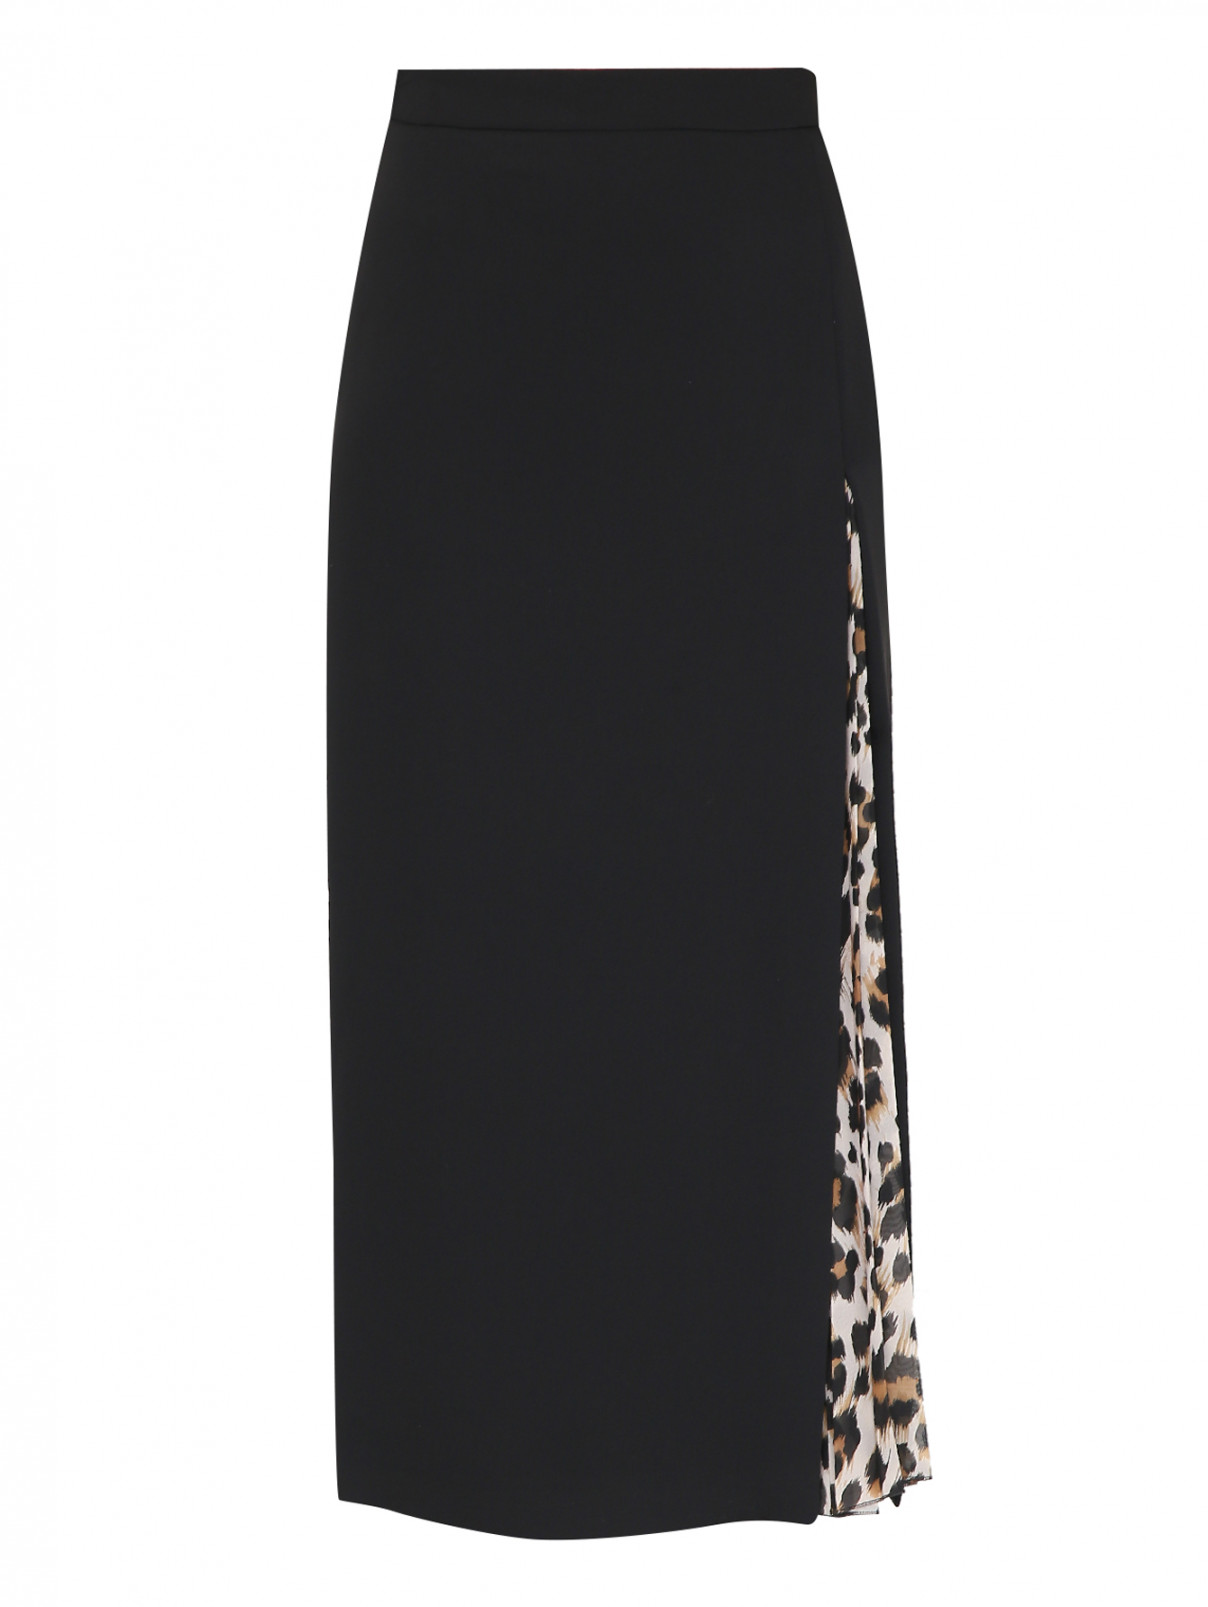 Юбка миди с контрастной вставкой Moschino Boutique  –  Общий вид  – Цвет:  Черный